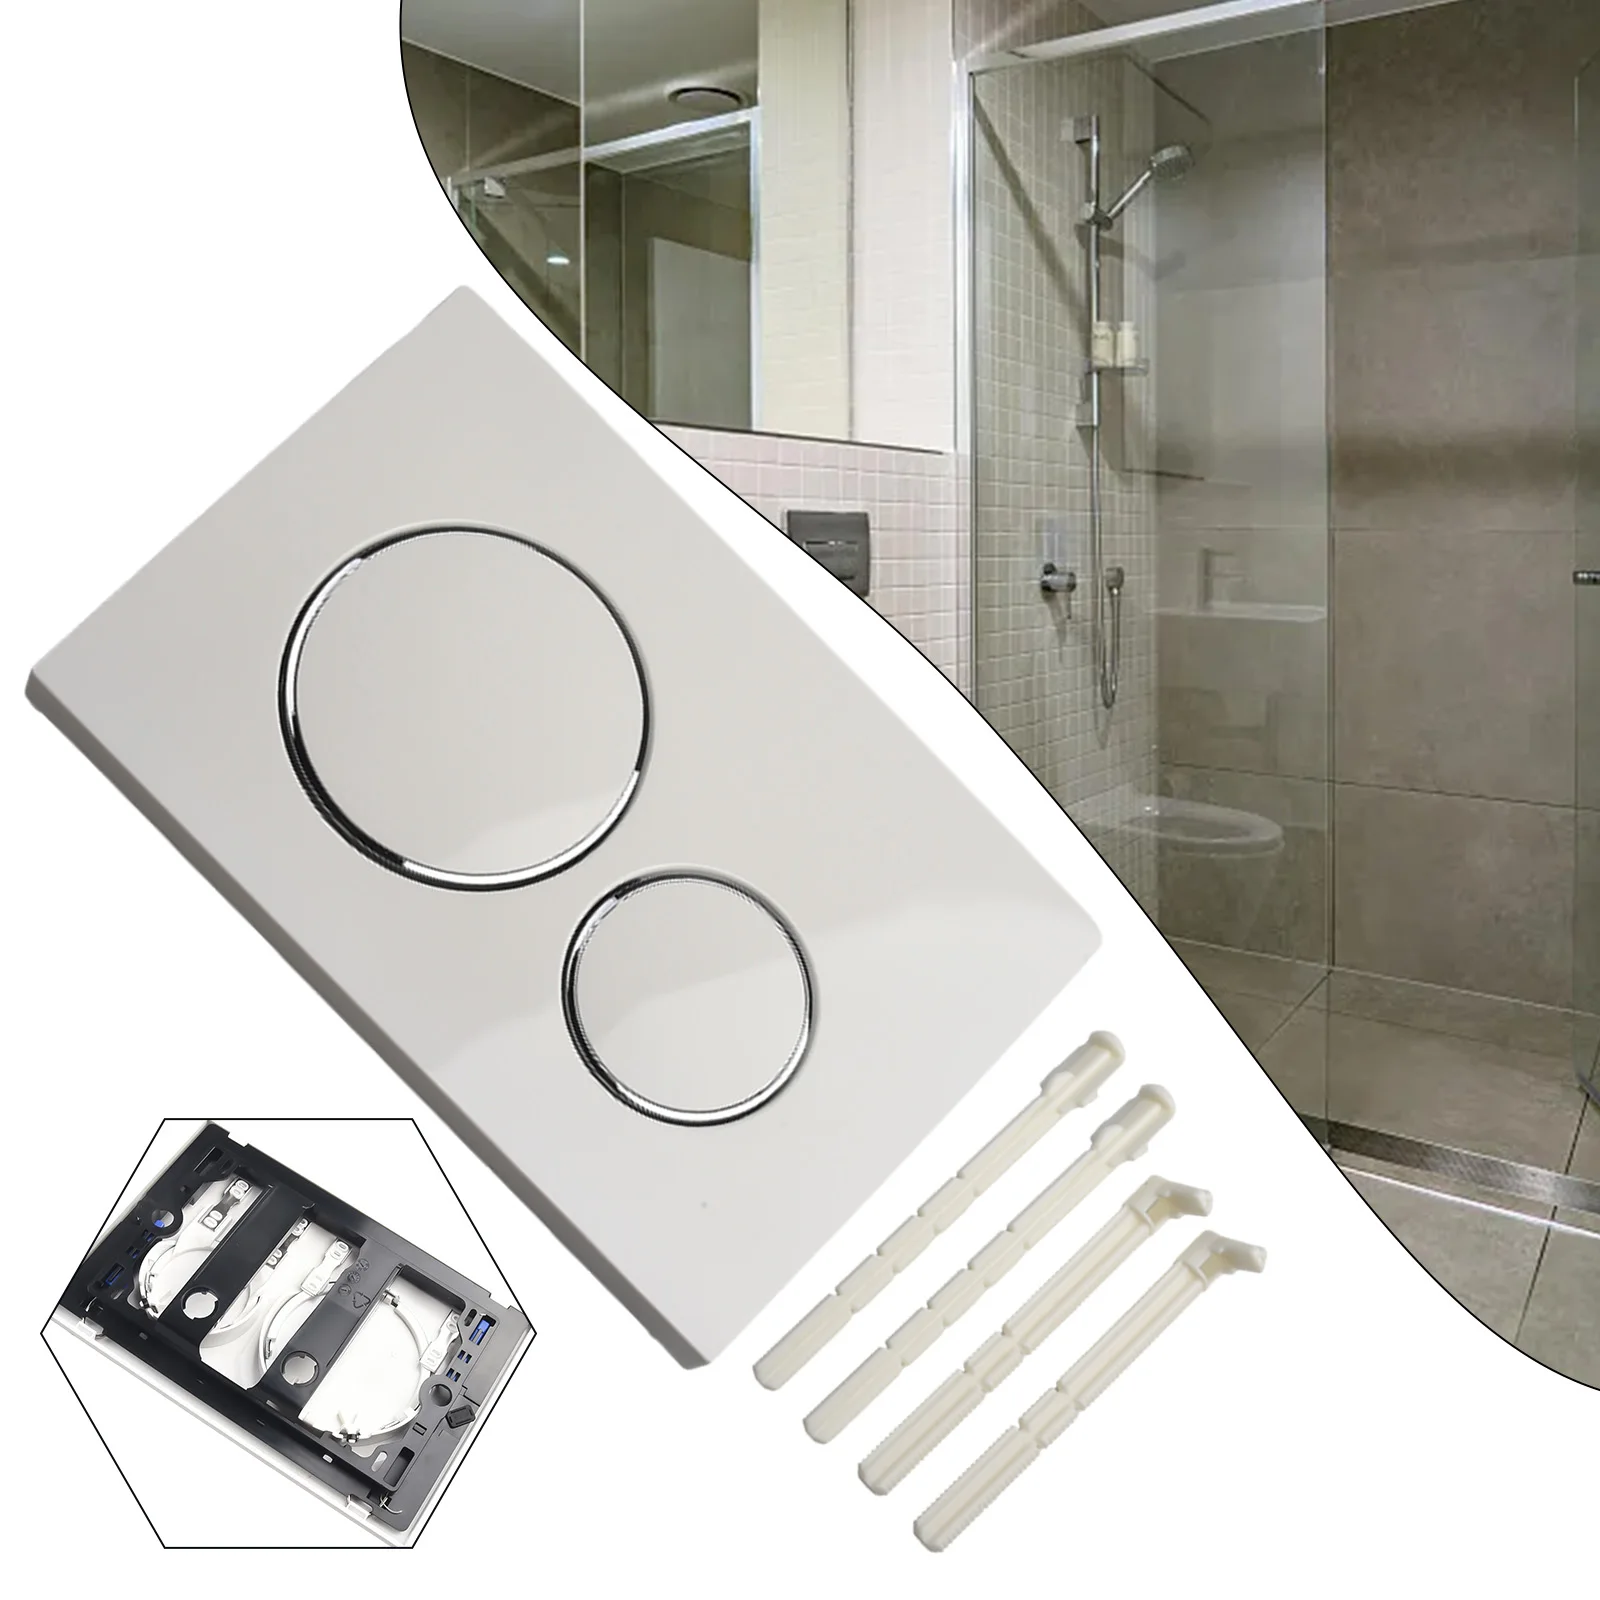 

1 шт. двойная смывная пластина с нажимным стержнем, набор пластиковых пластин для Geberit Sigma20, хромированная двойная смывная пластина для ванной комнаты, запчасти для туалета